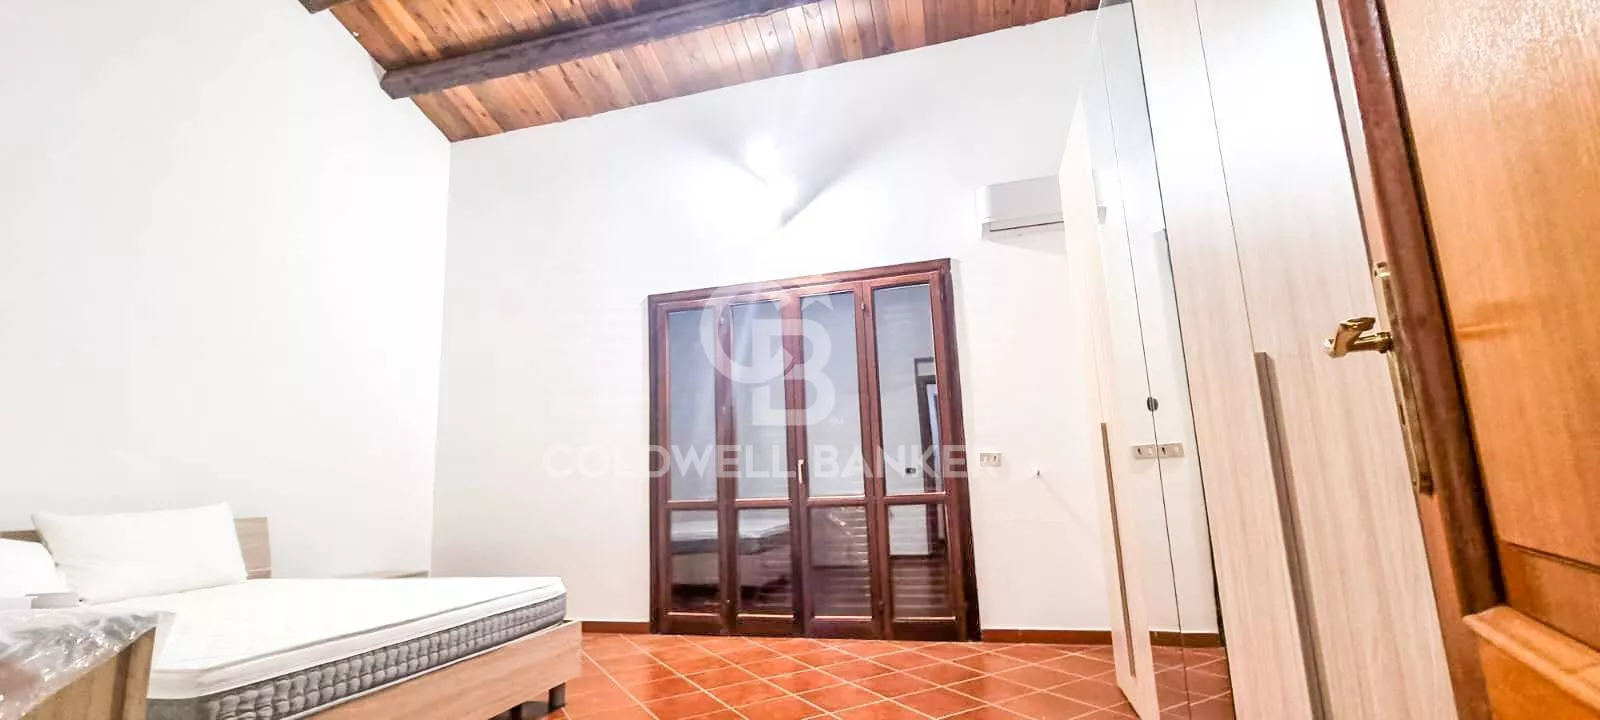 Immagine per Villa in vendita a Trabia Sant' Onofrio